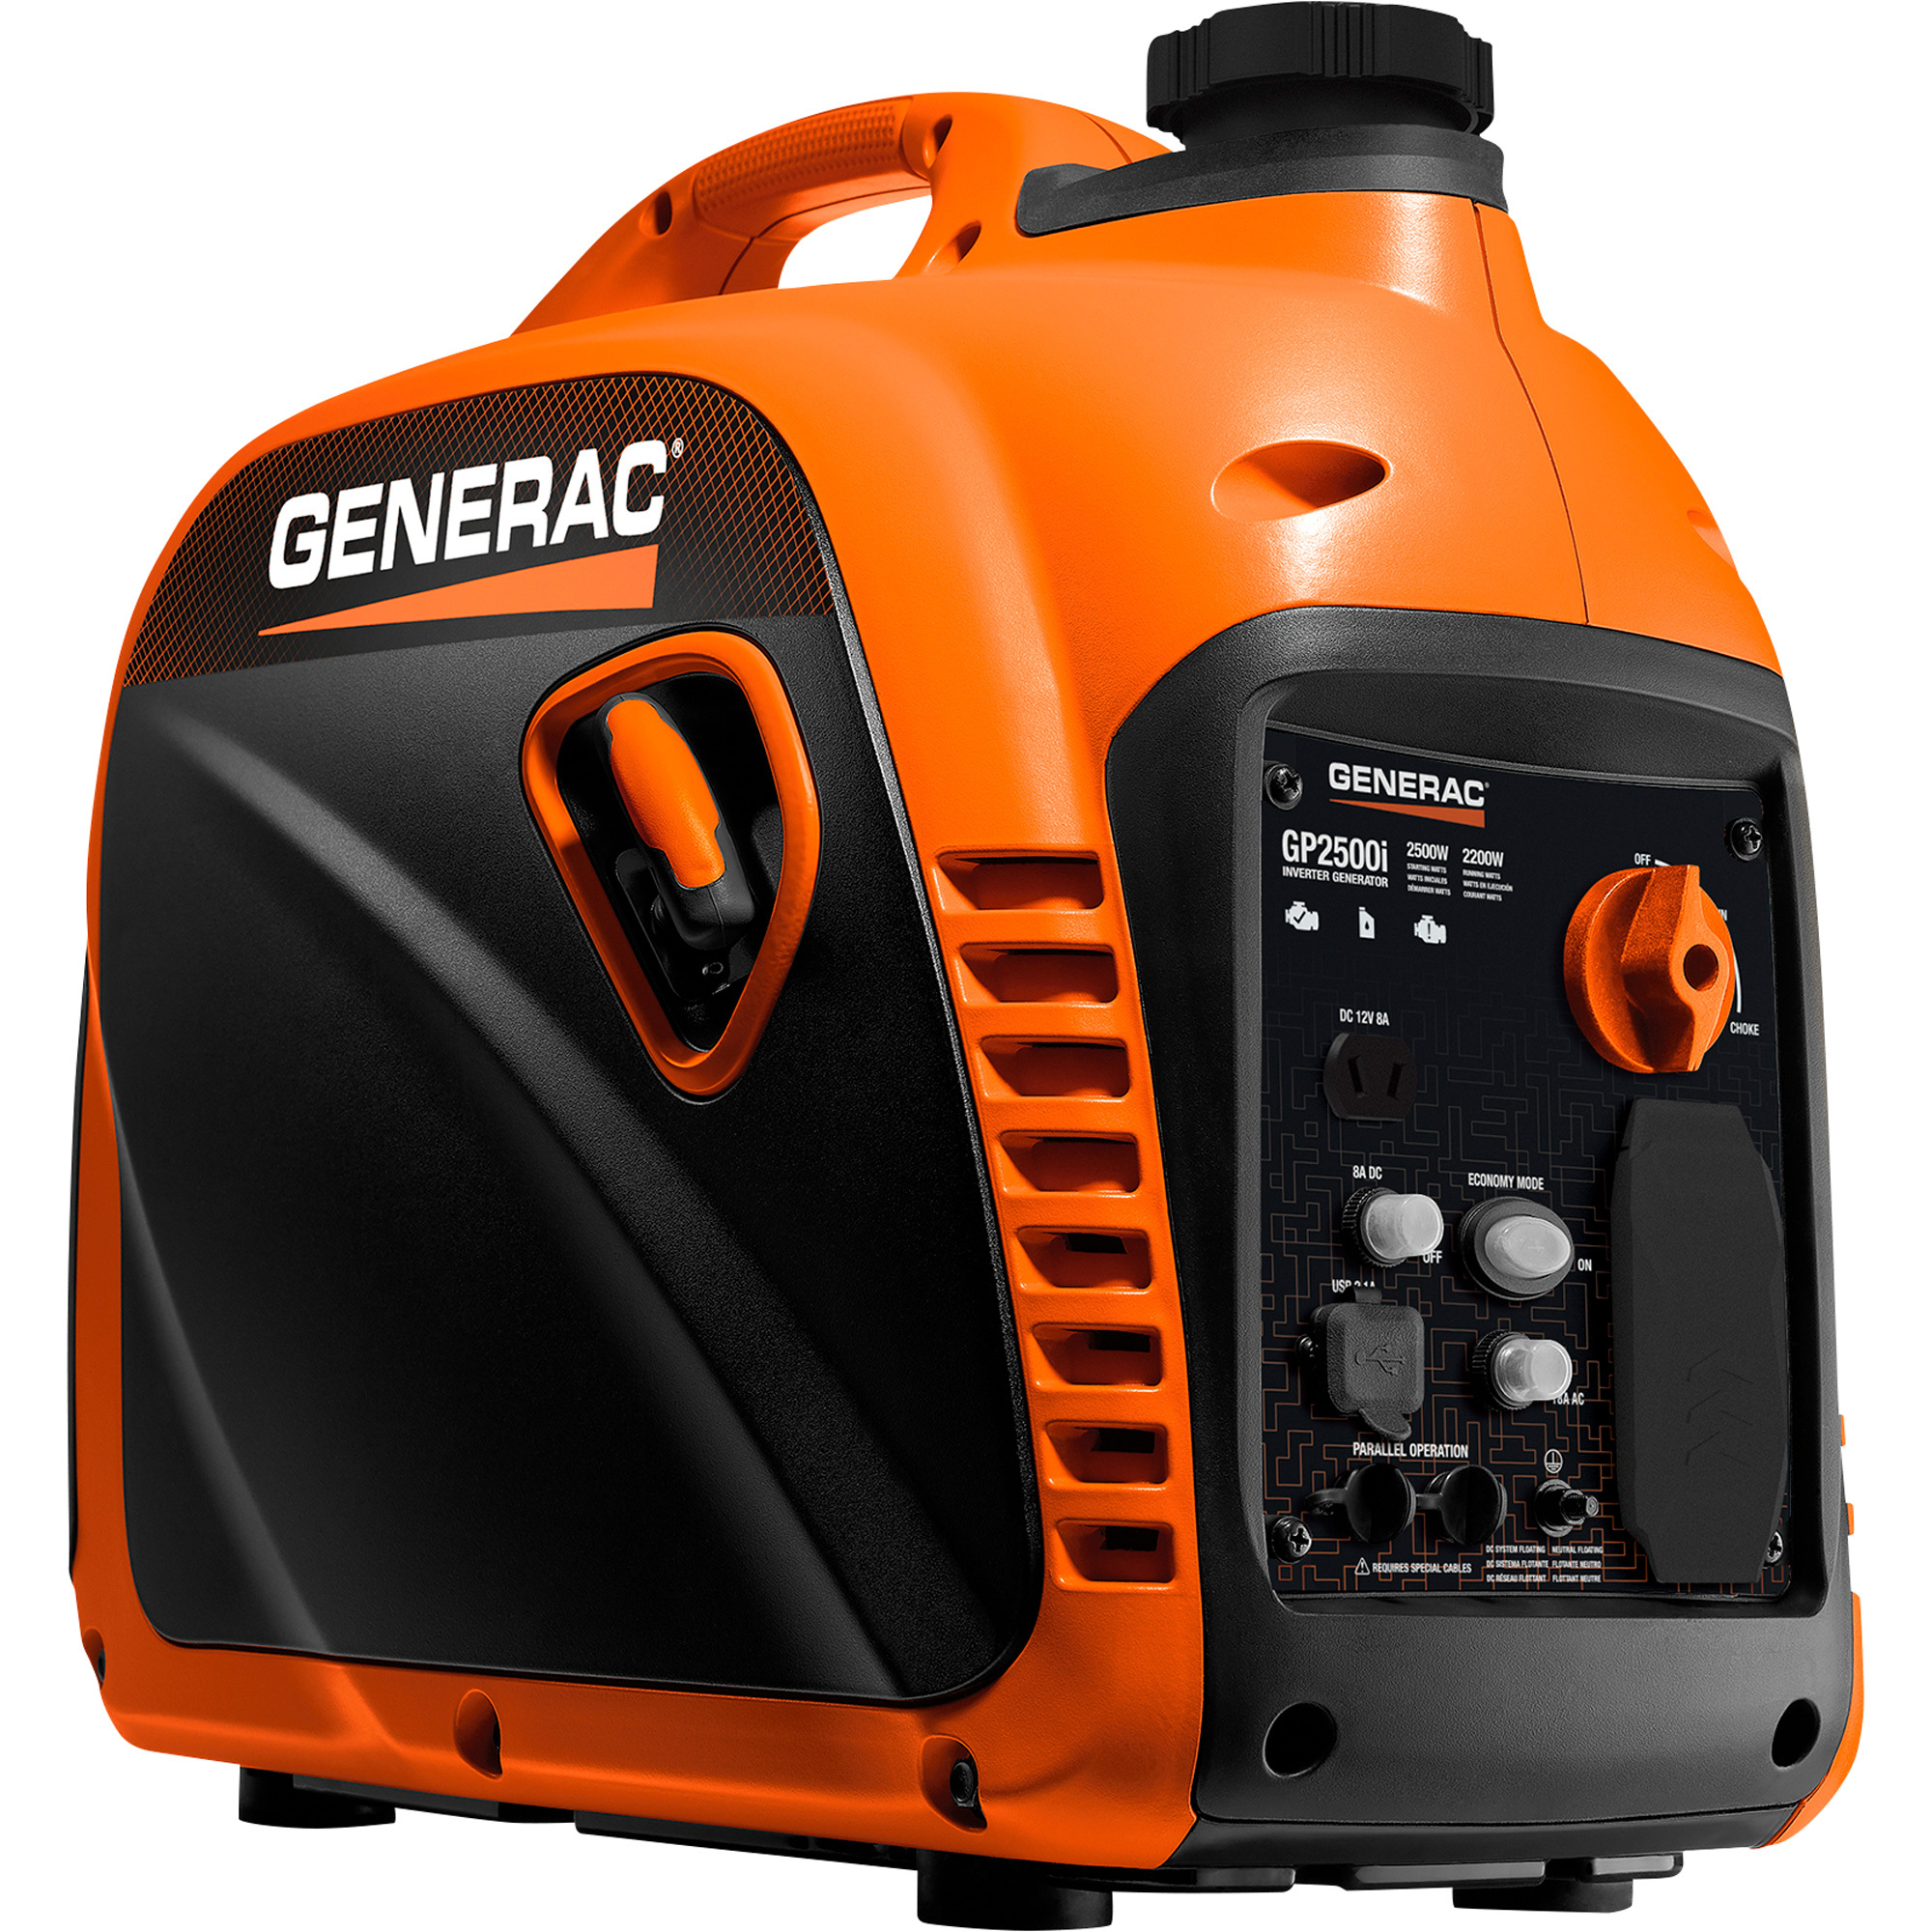 Generac Inverter Generator 3500 Surge Watts